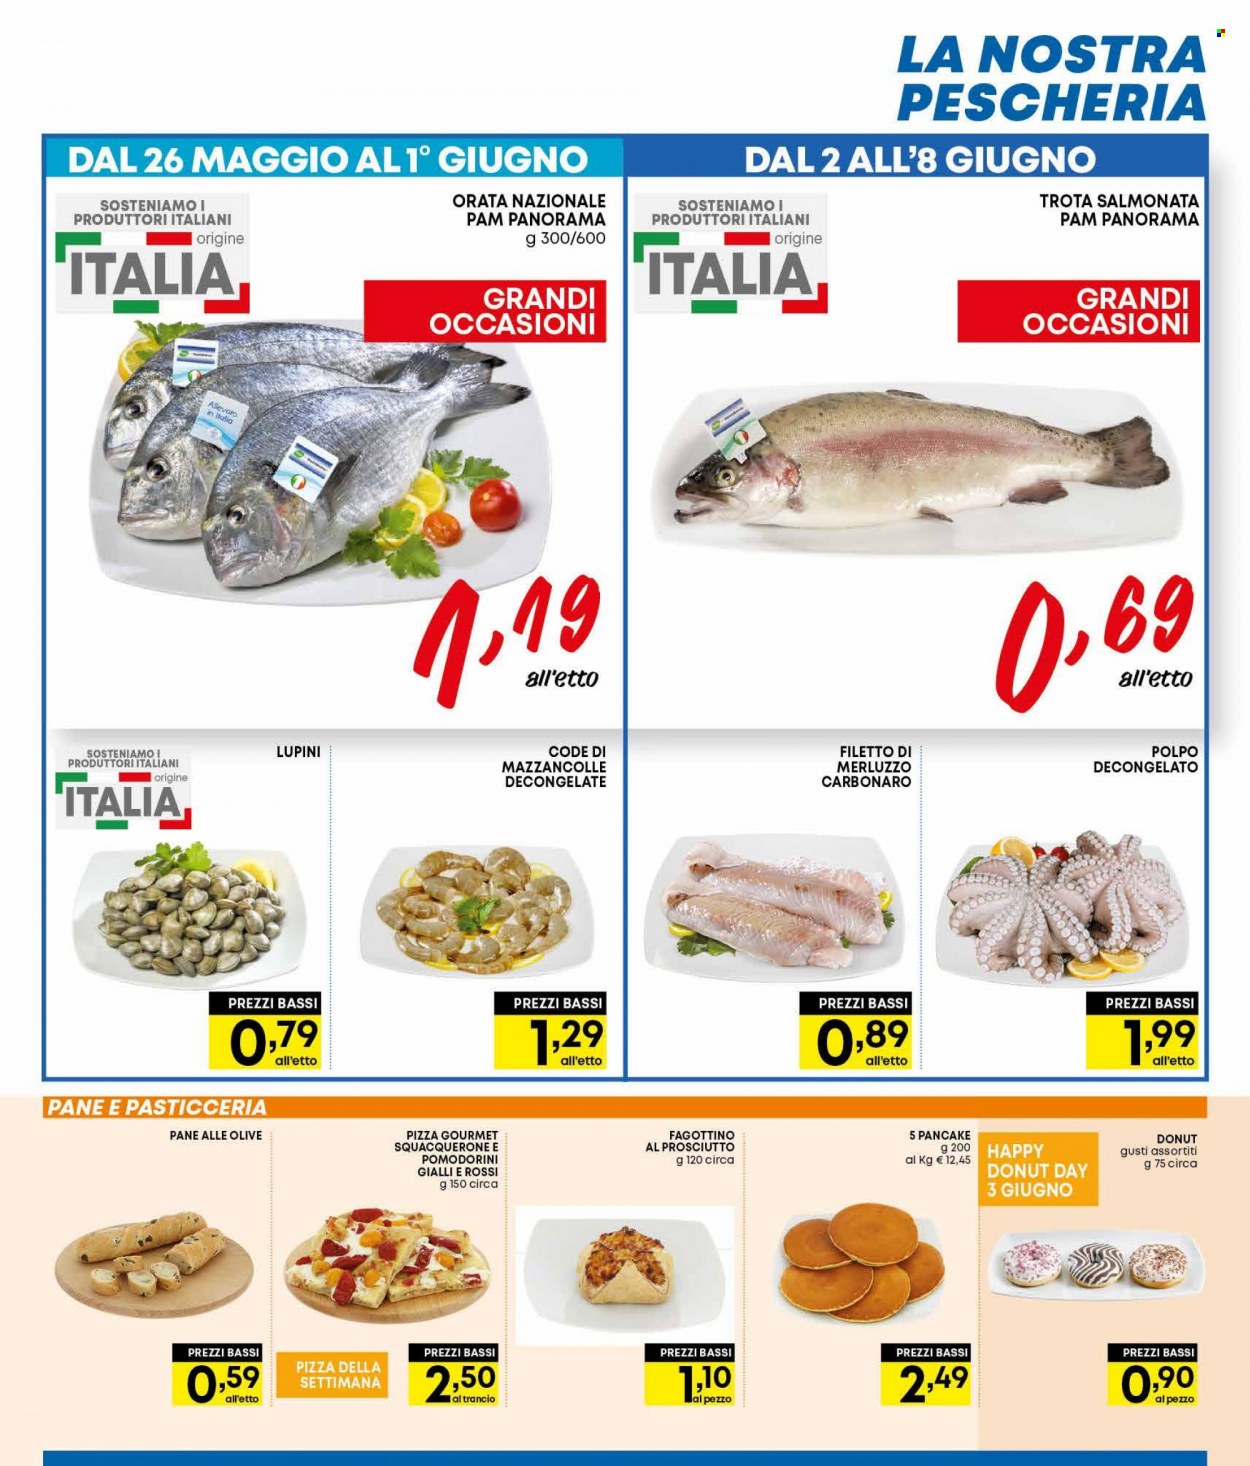 thumbnail - Volantino Panorama - 26/5/2022 - 8/6/2022 - Prodotti in offerta - pane, ciambella, fagottino, filetti di merluzzo, mazzancolle, merluzzo, trota salmonata, orata, polpo, lupini, pizza. Pagina 17.